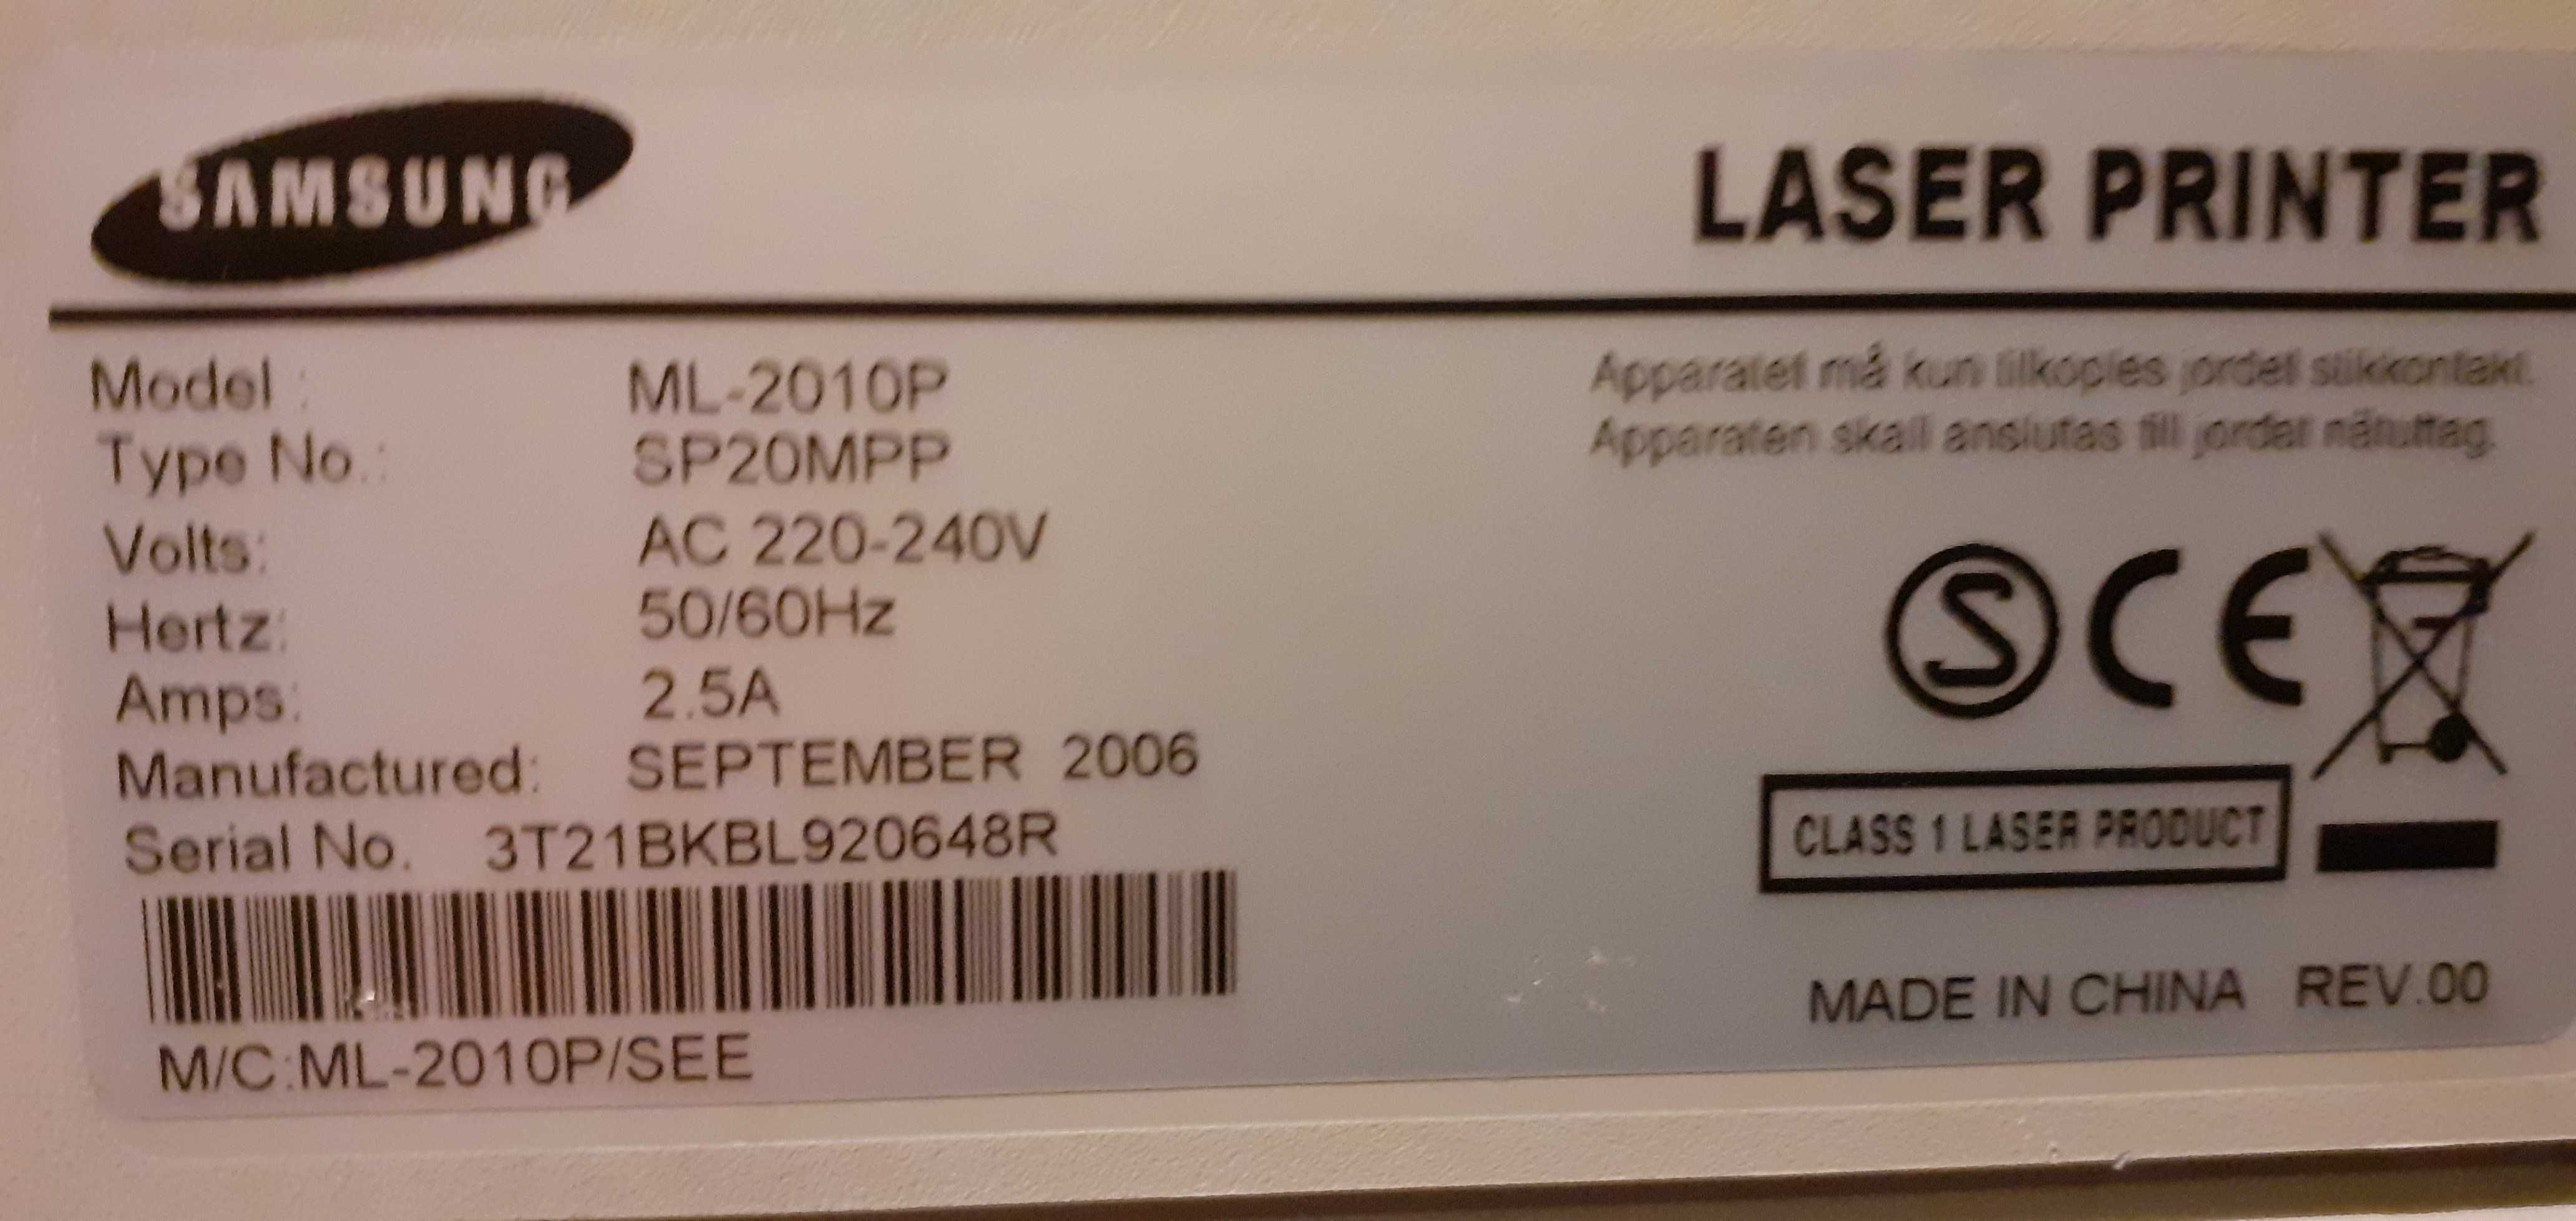 Drukarka laserowa Samsung ML 2010P